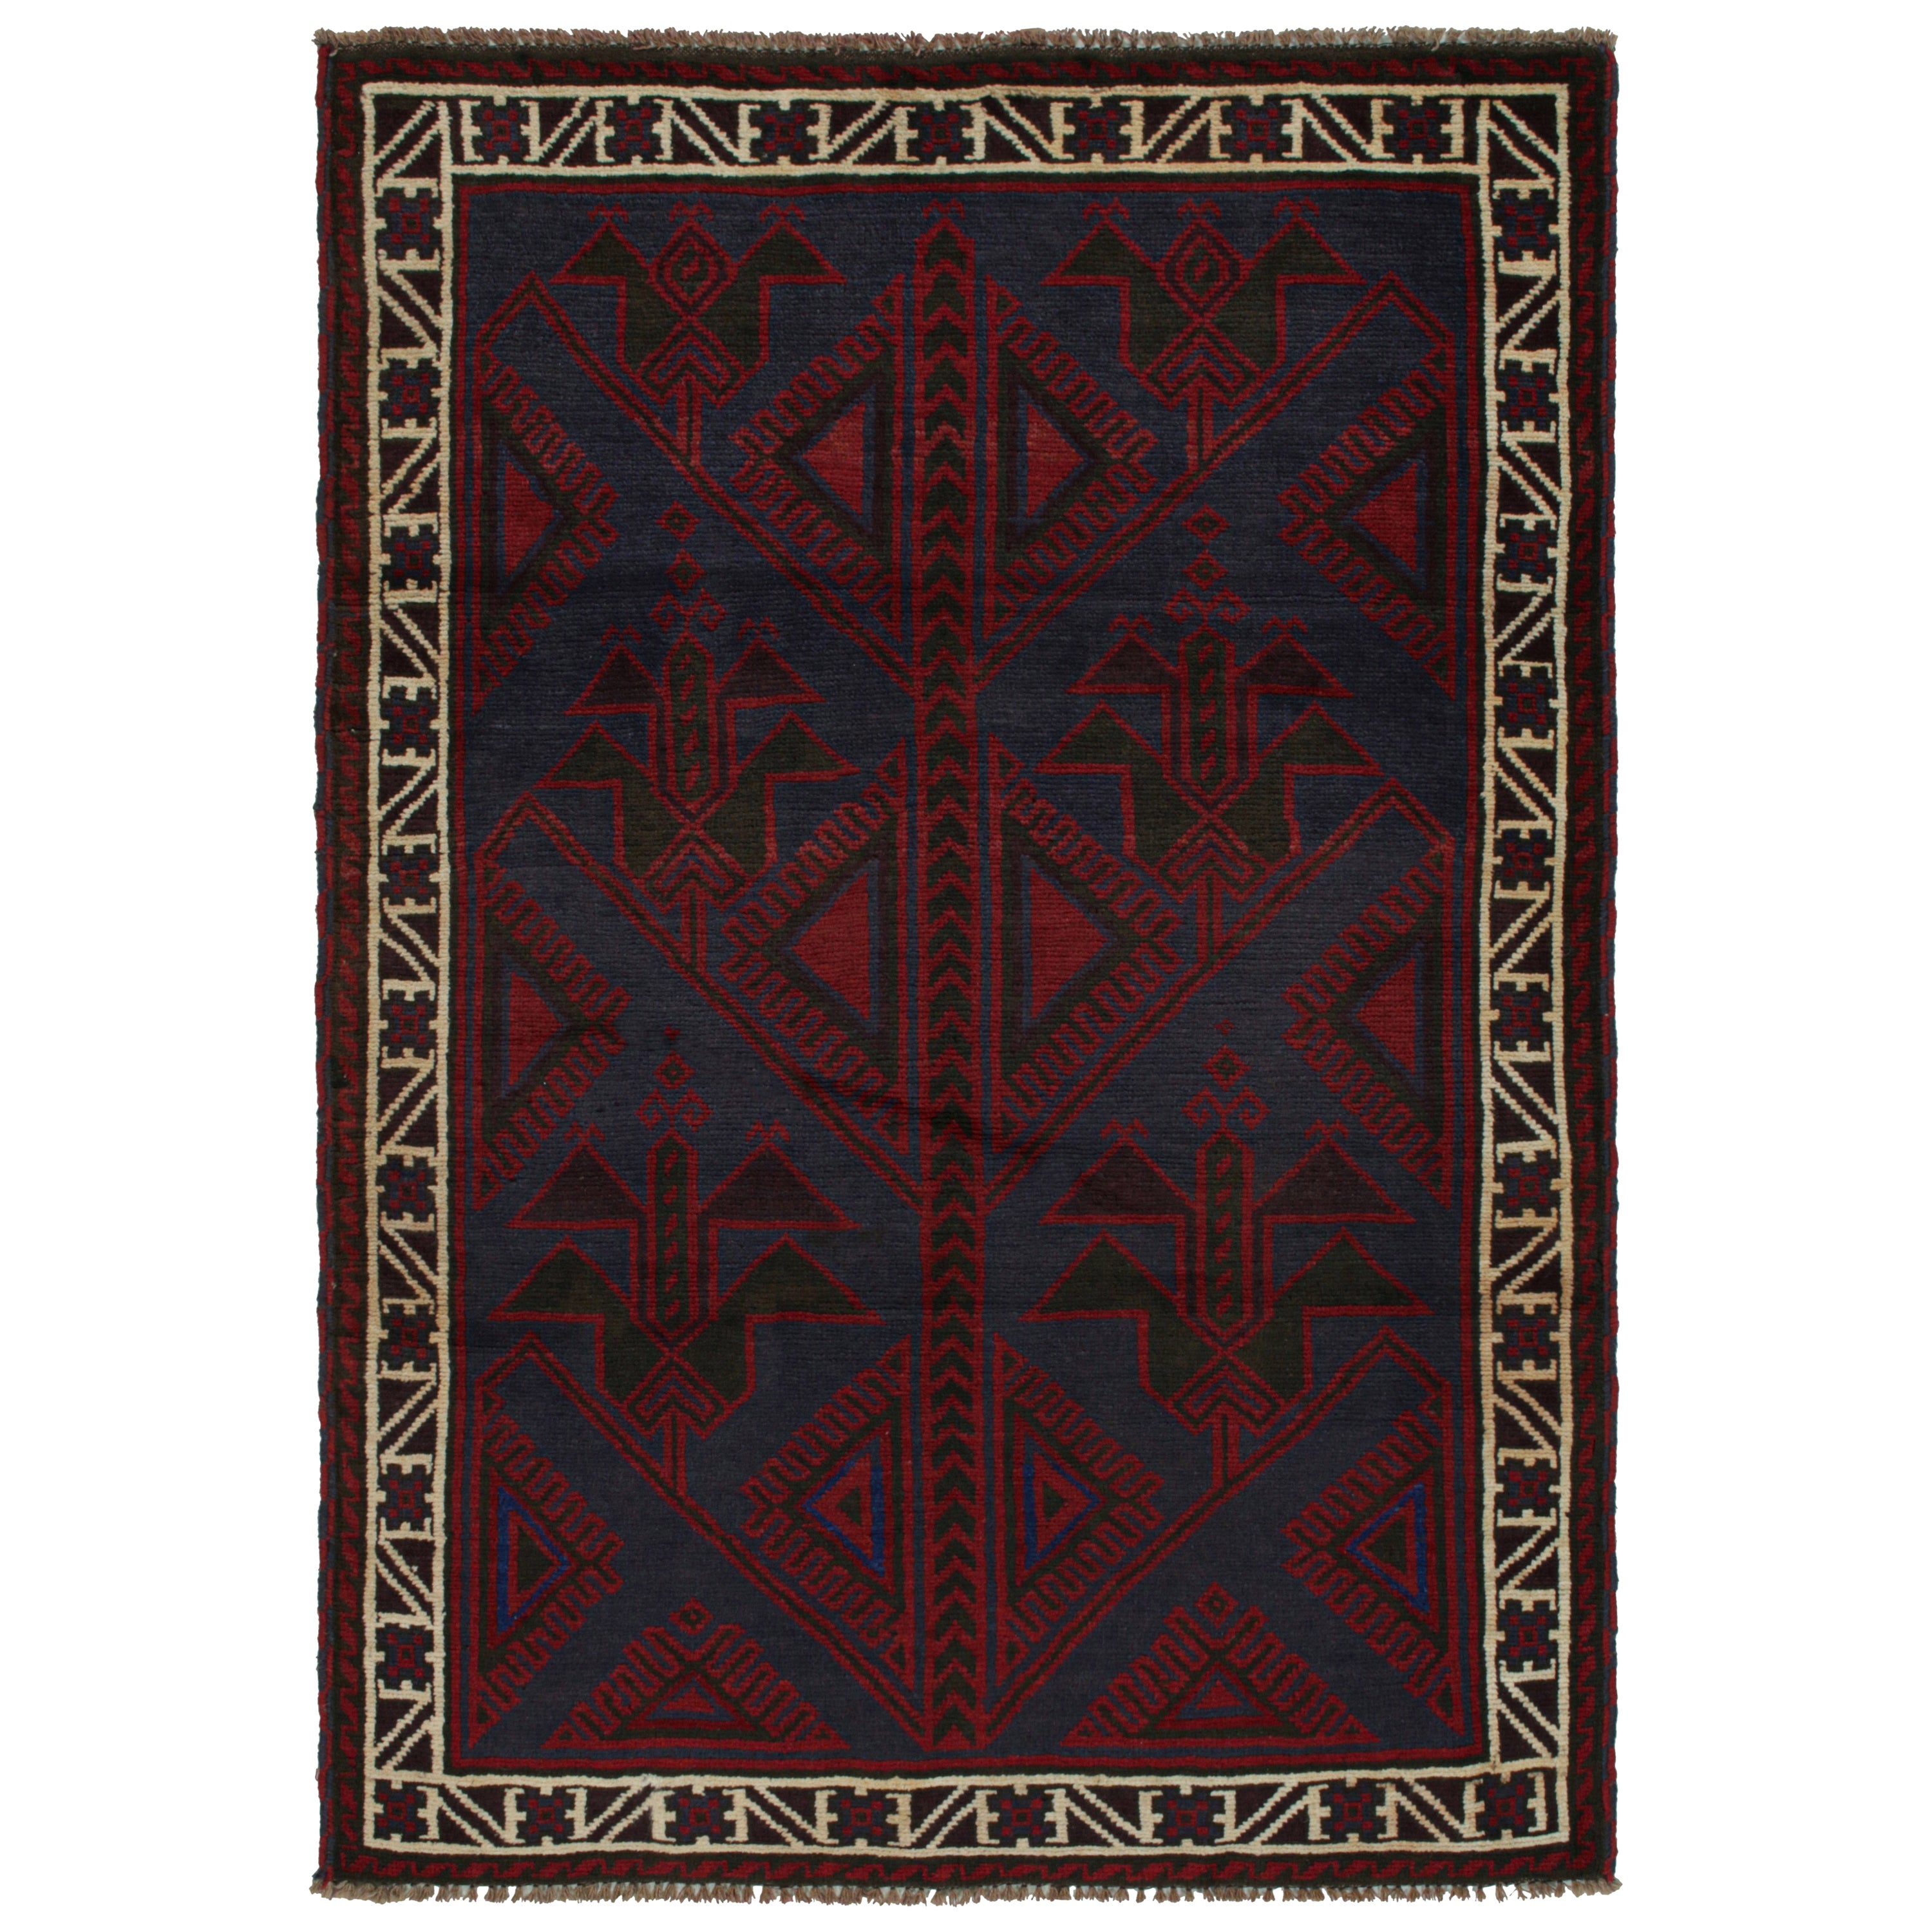 Vintage Baluch Stammes-Teppich in roten und blauen geometrischen Mustern, von Rug & Kilim